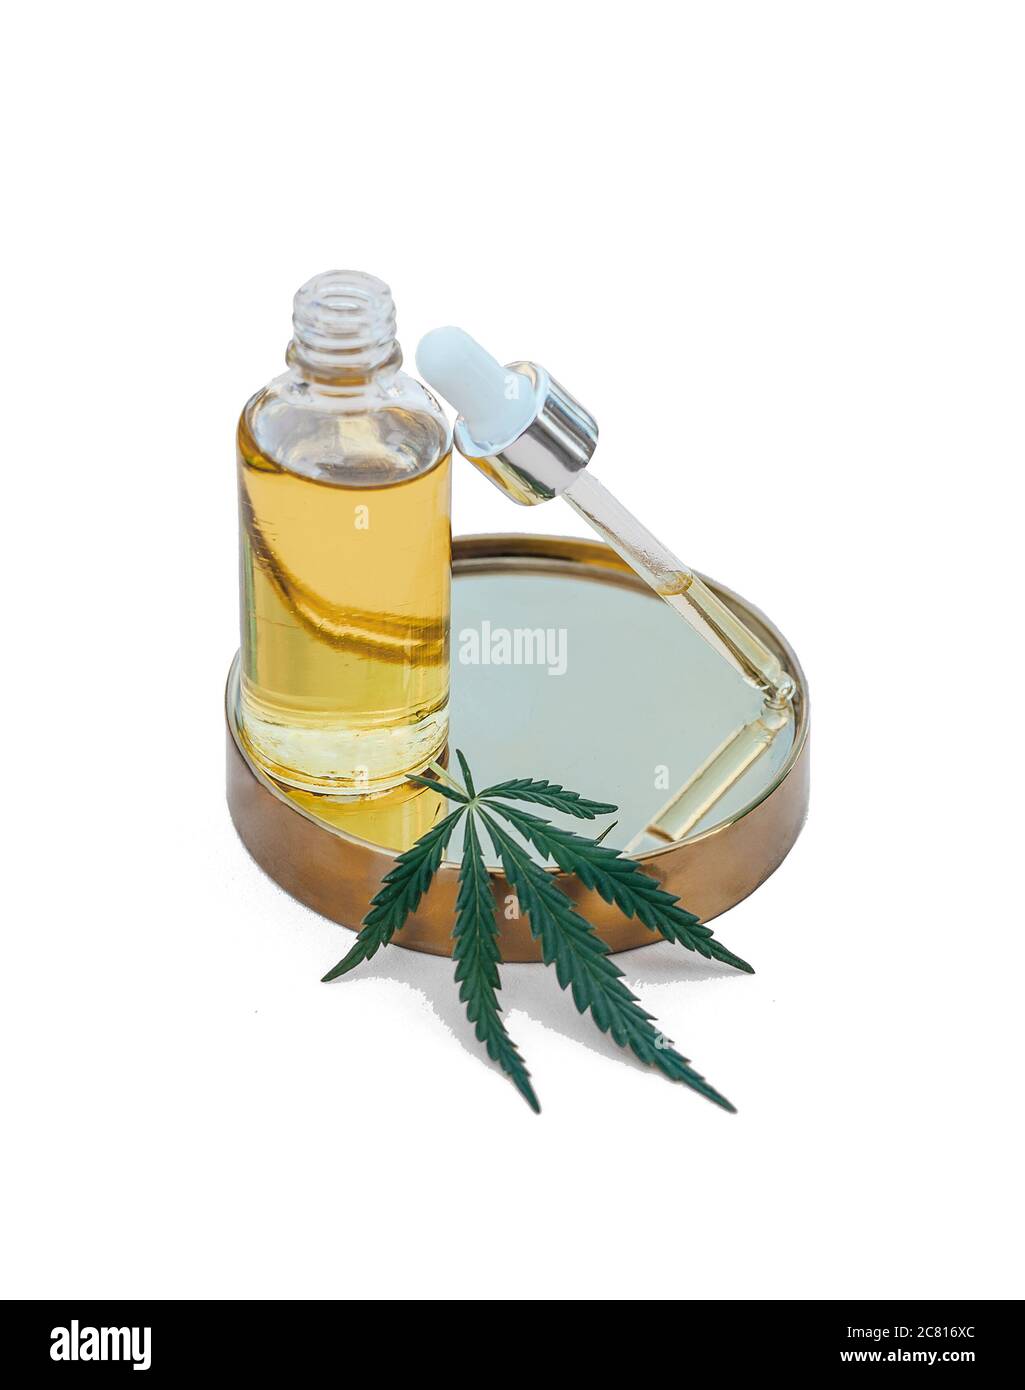 Glasflasche und tropfender CBD-ÖL, THC-Tinktur und Cannabisblätter auf isoliertem weißem Hintergrund. Laborproduktion von Kosmetika mit CBD-Öl. Stockfoto